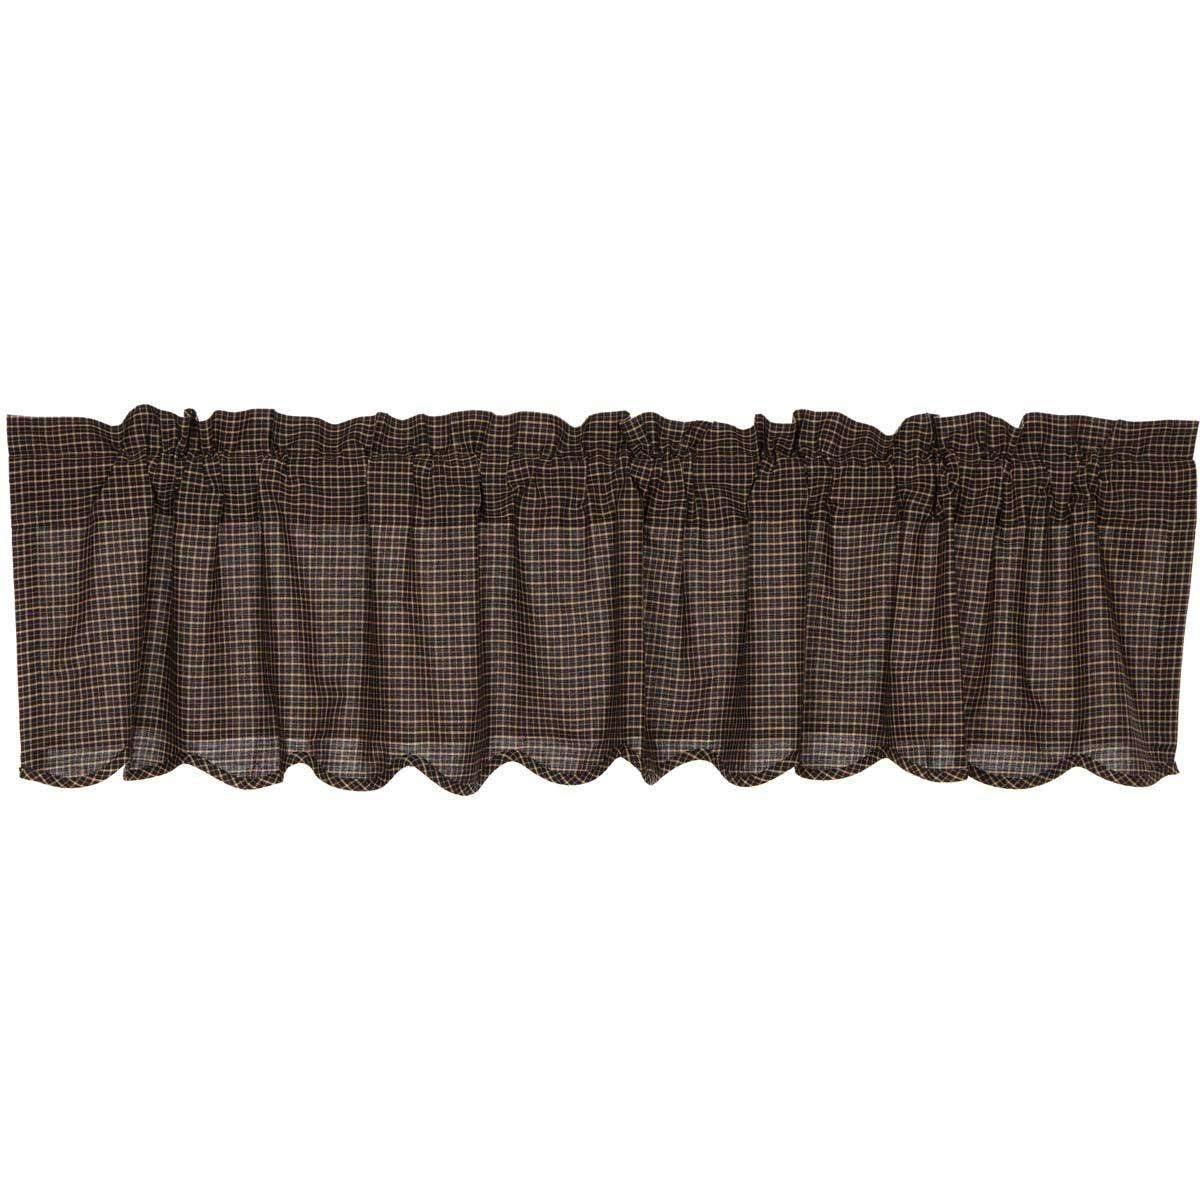 Kettle Grove Plaid Valance Curtain Scalloped16x72 - The Fox Decor